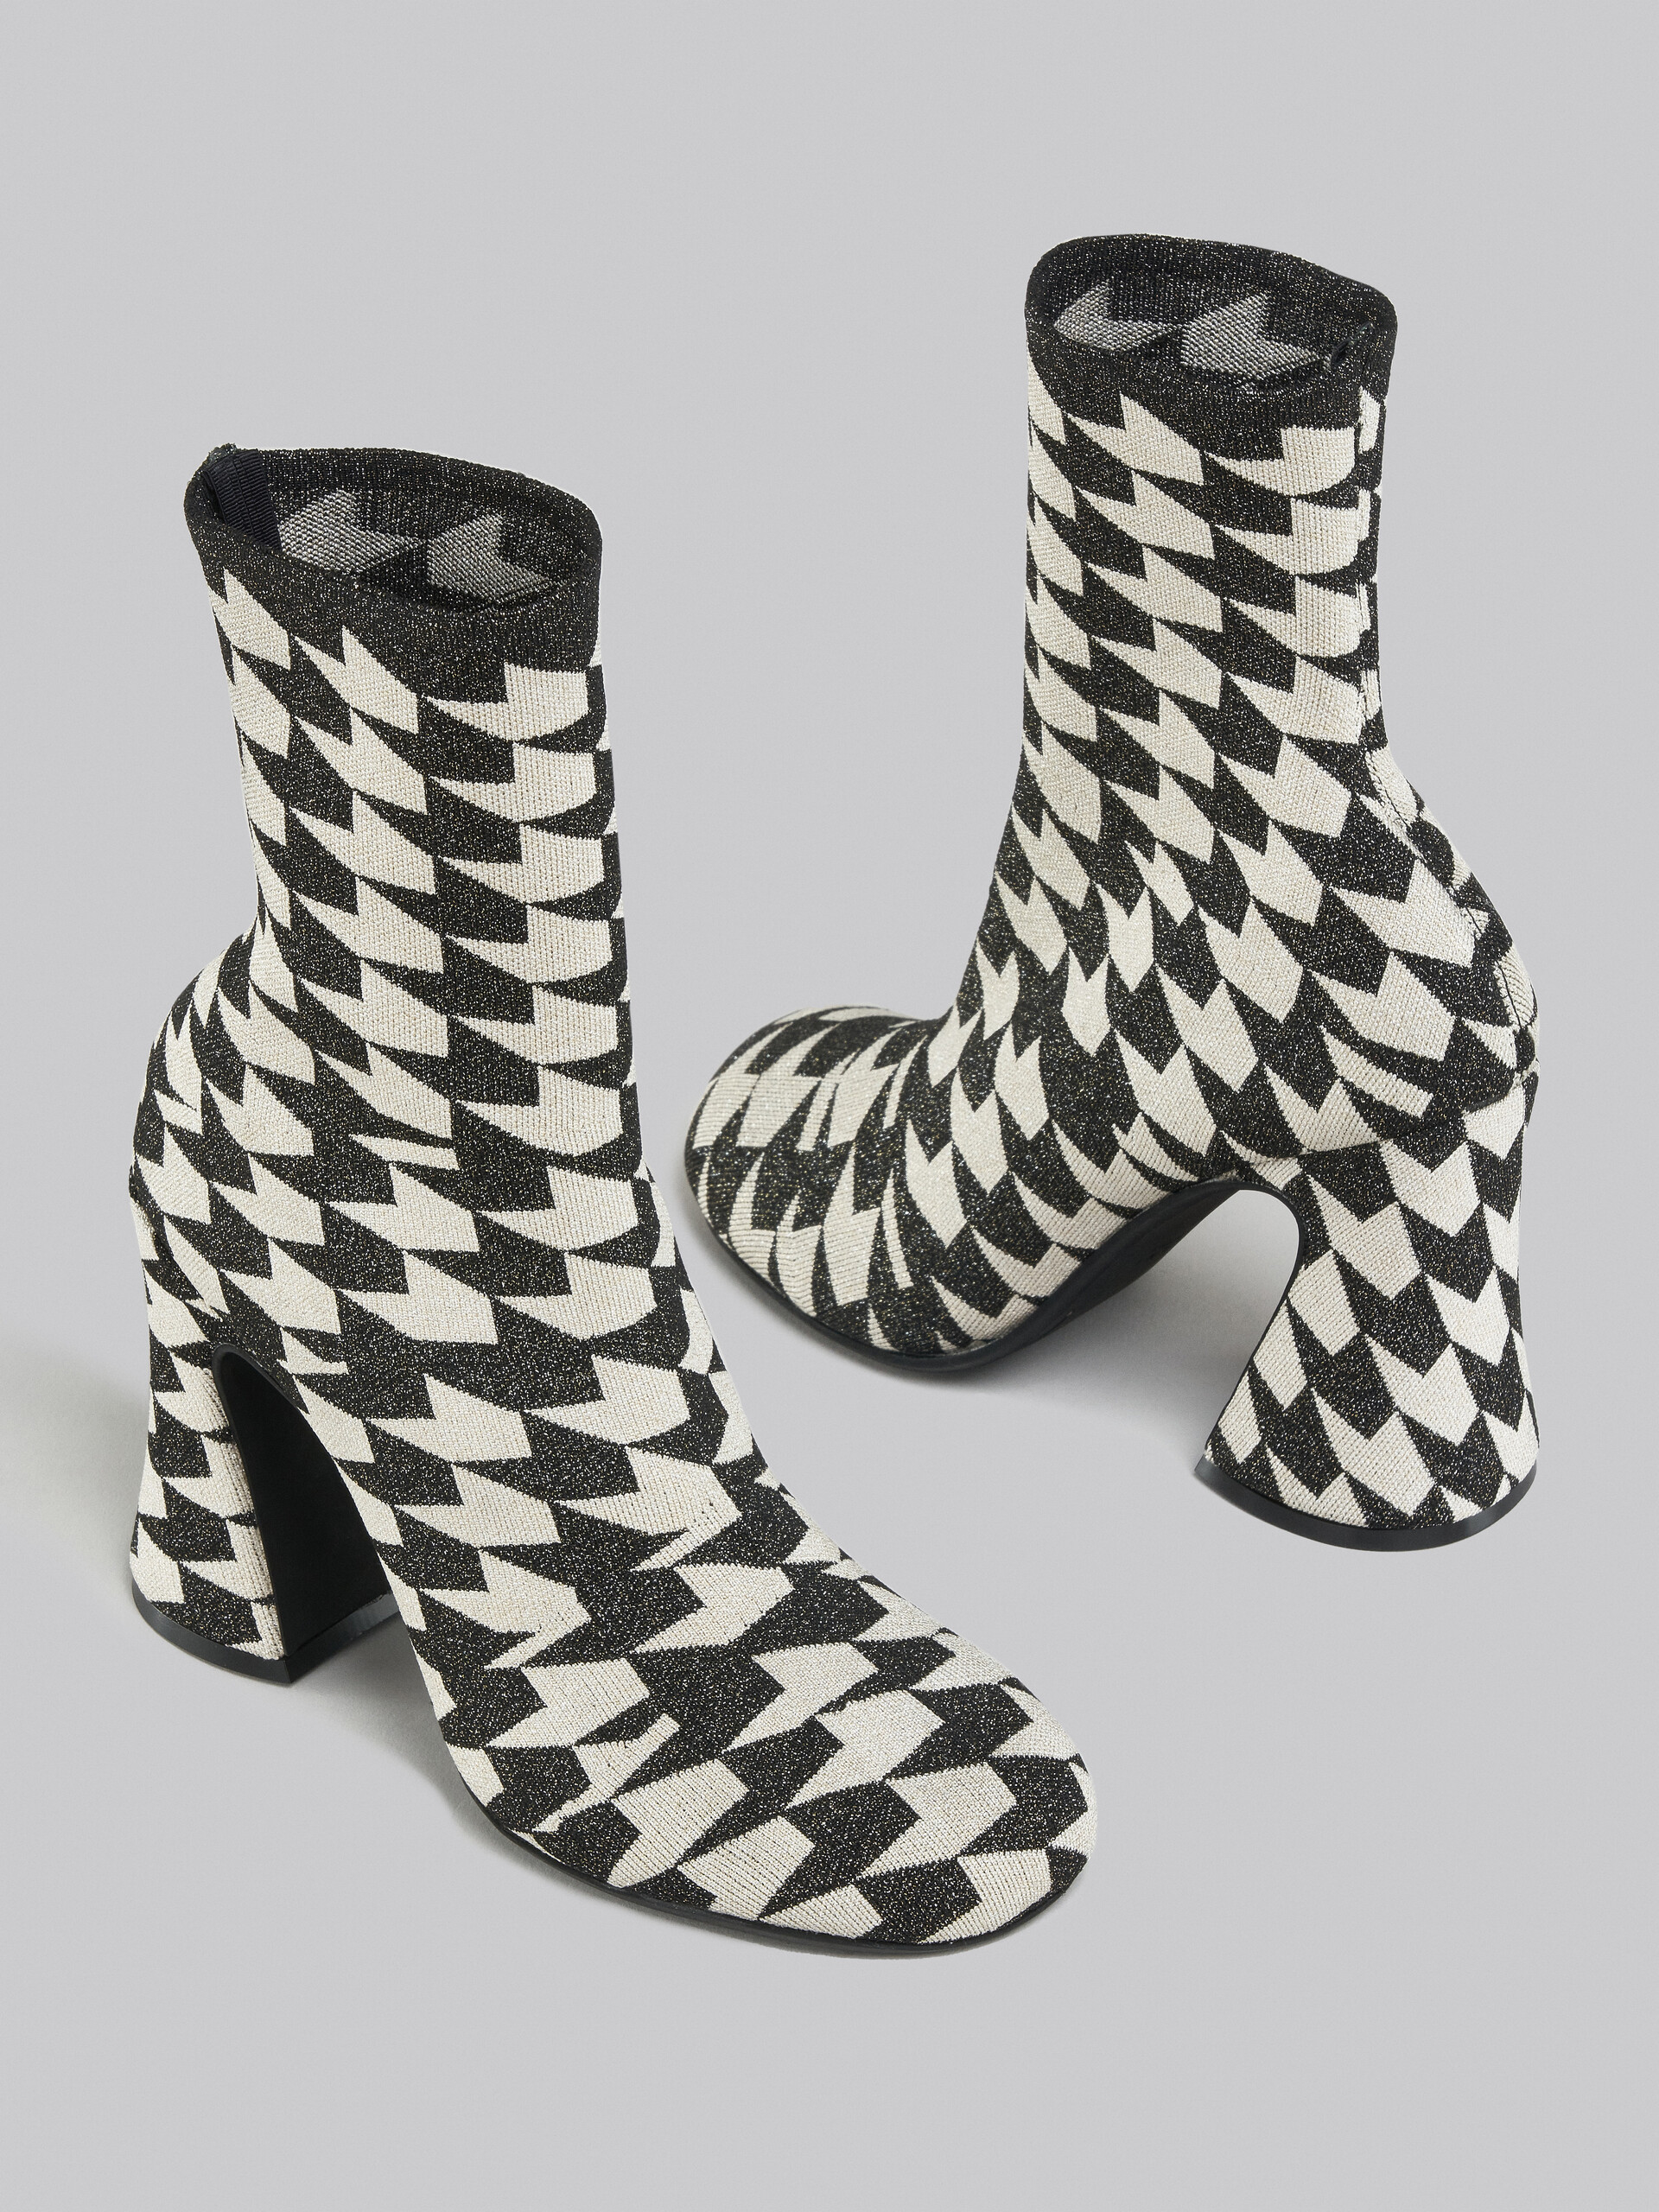 Stiefeletten aus Jacquard und Lurex in Schwarz und Weiß - Stiefel - Image 4